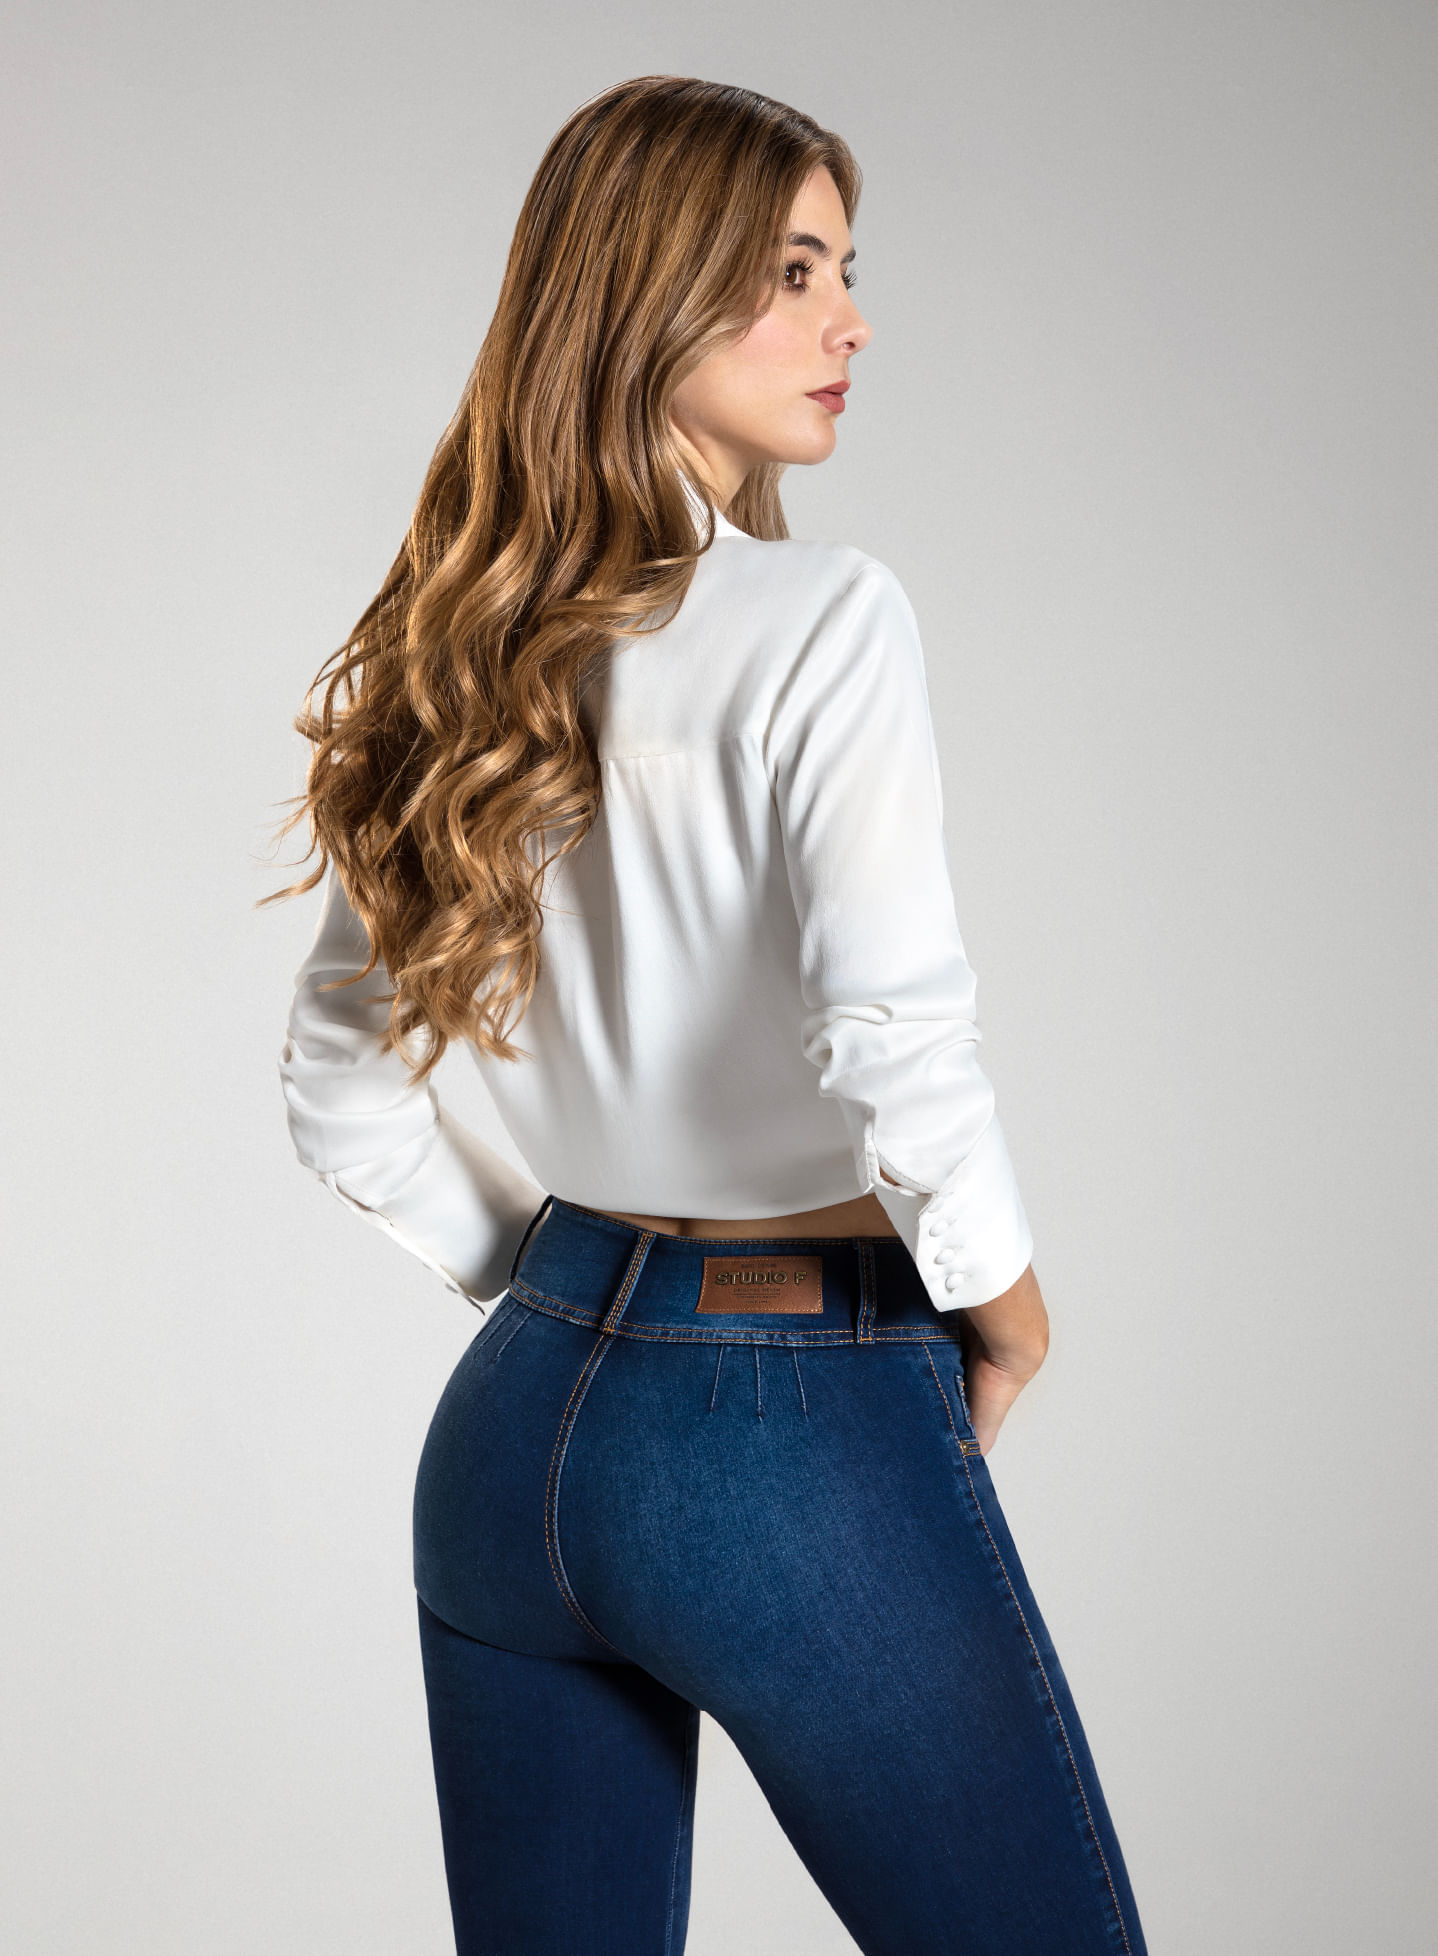 Foto en plano americano de mujer dando la espalda vistiendo jean sin bolsillos pretina ancha y camisa manga larga blanca